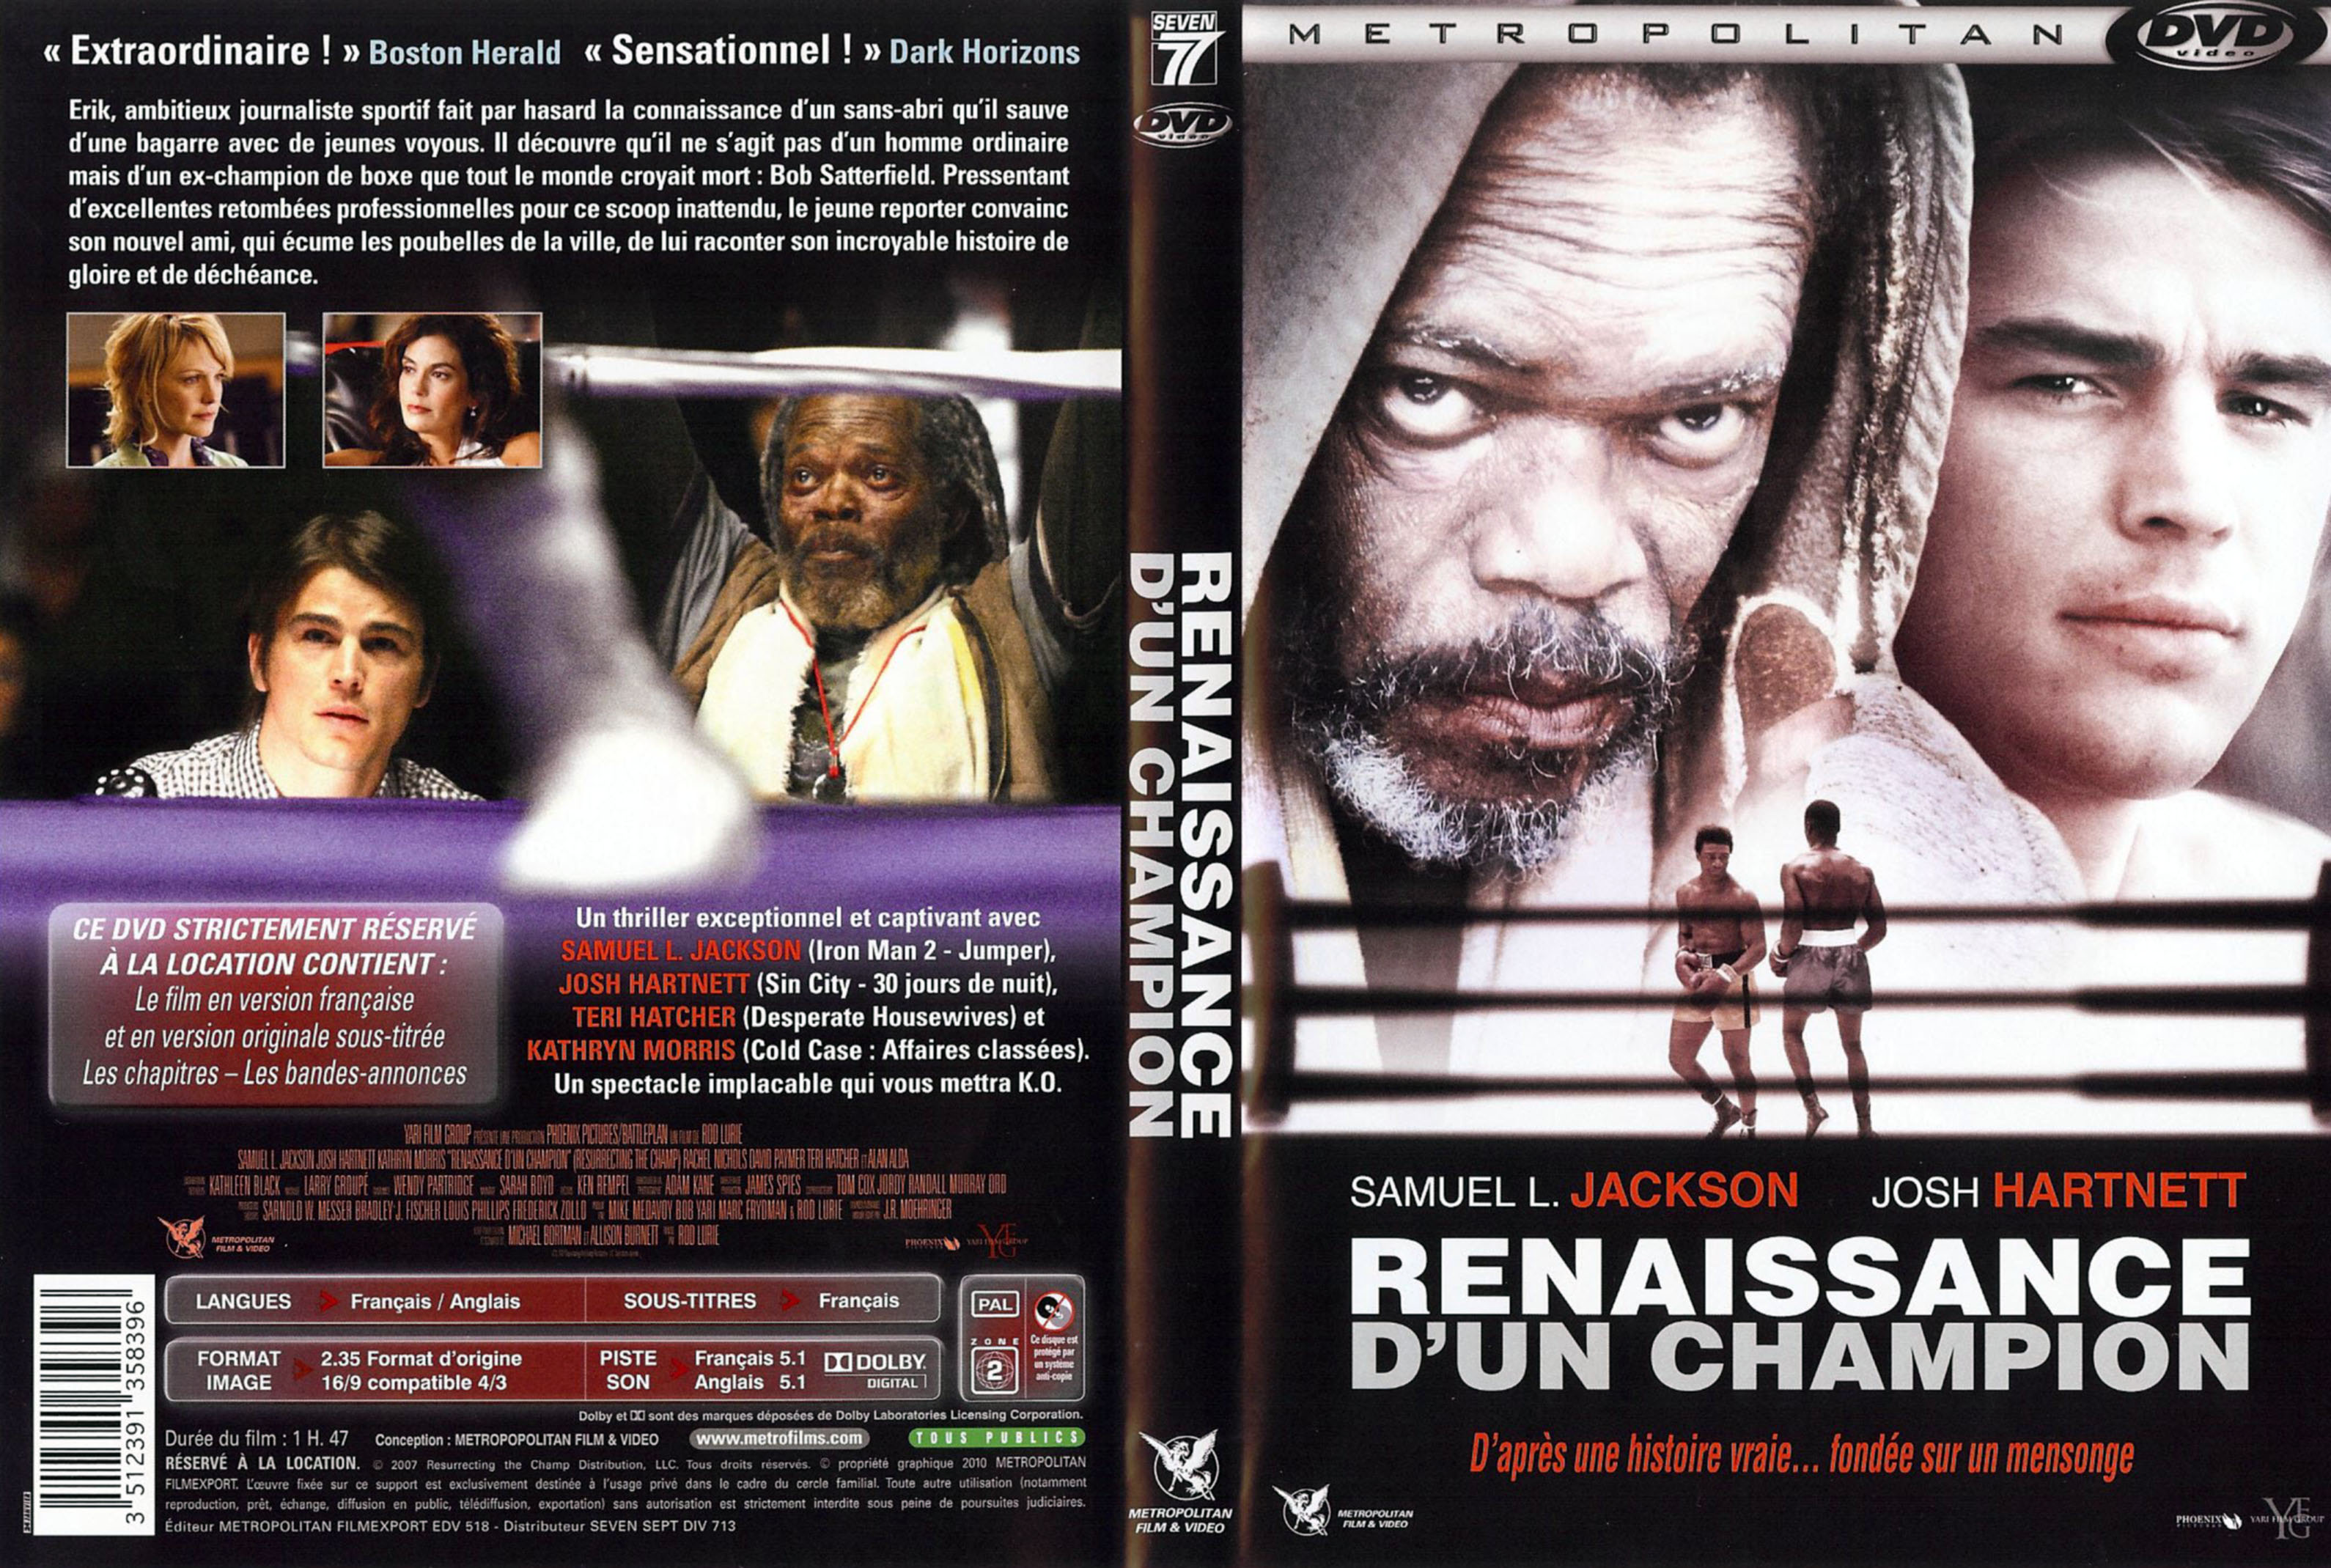 Jaquette Dvd De Renaissance Dun Champion Cinéma Passion